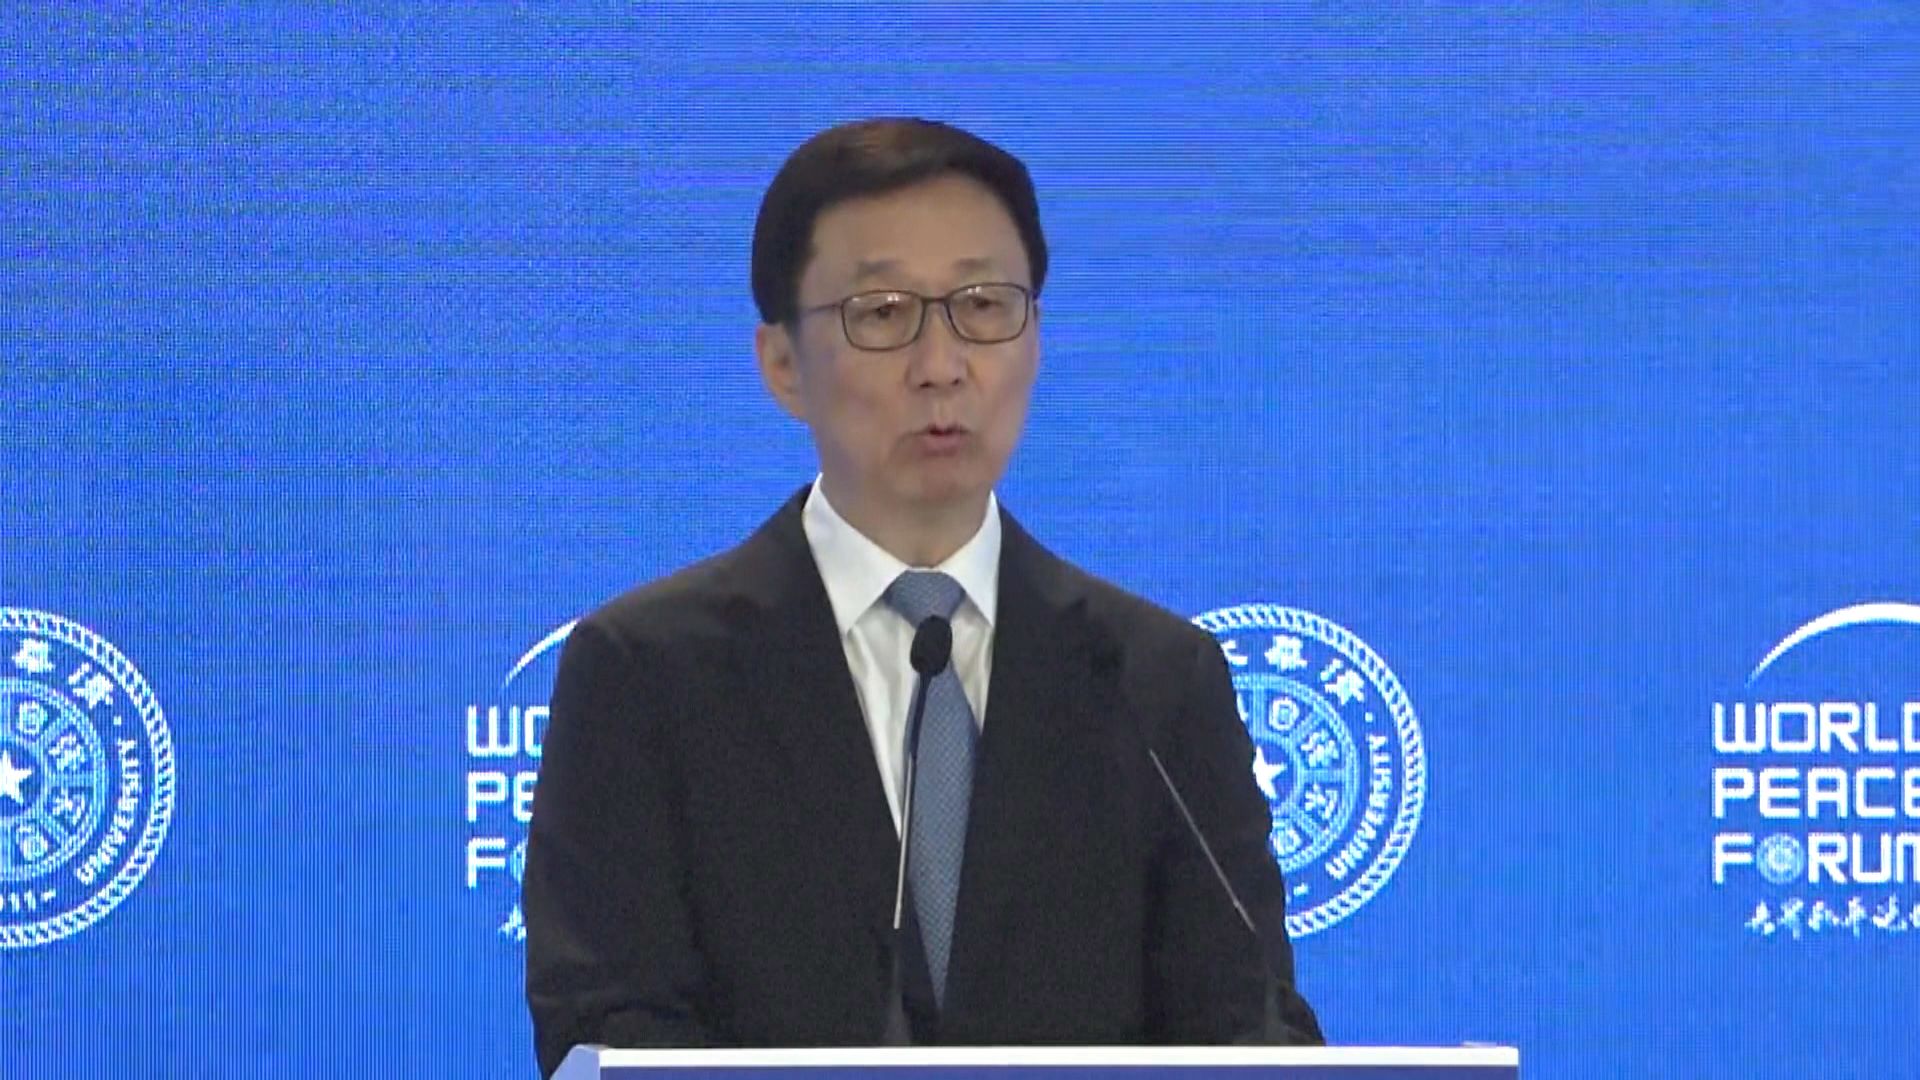 世界和平論壇北京召開 韓正重申中國堅定做世界和平維護者